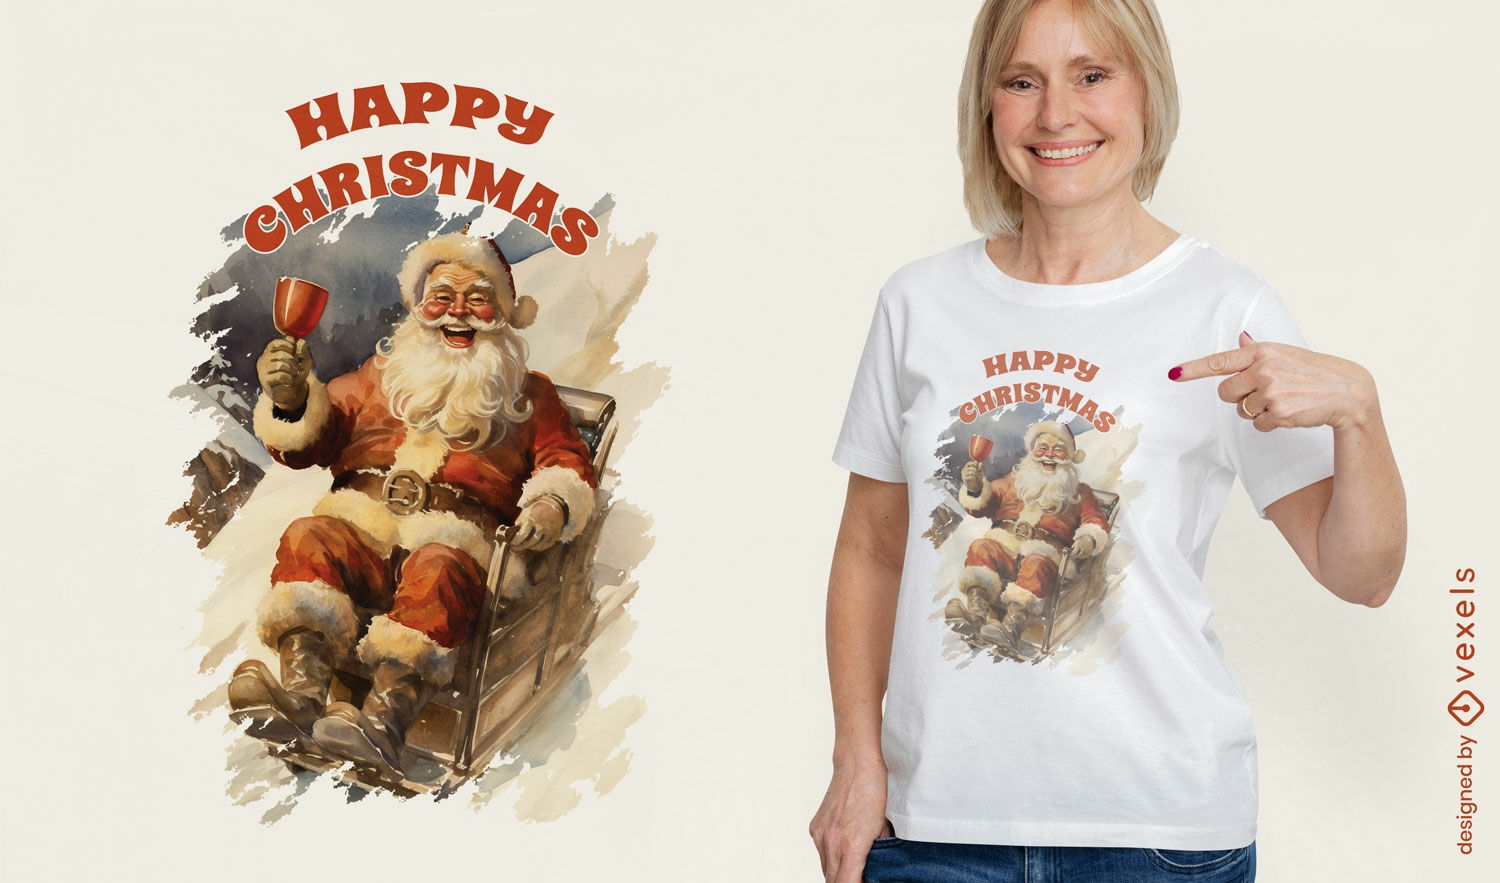 Celebrando el diseño de camiseta de Santa Claus.